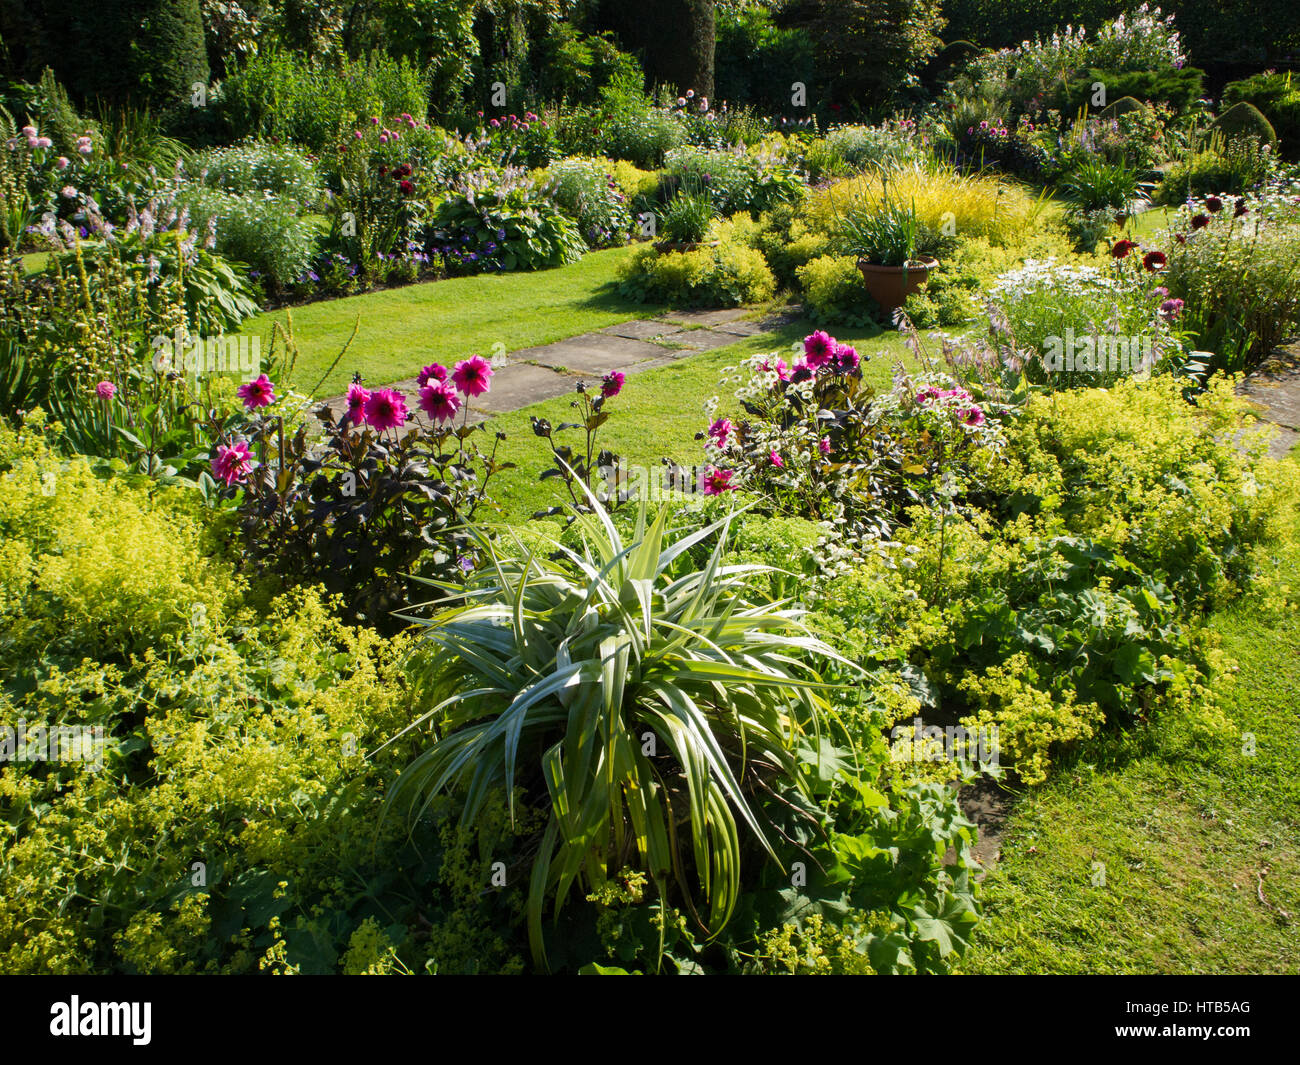 Chenies Manor versunkene Garten, Buckinghamshire. Abendsonne, verstärkt die Farben von Laub, Frauenmantel und dunkel rosa Dahlien hinzufügen zu ihrer Schönheit. Stockfoto